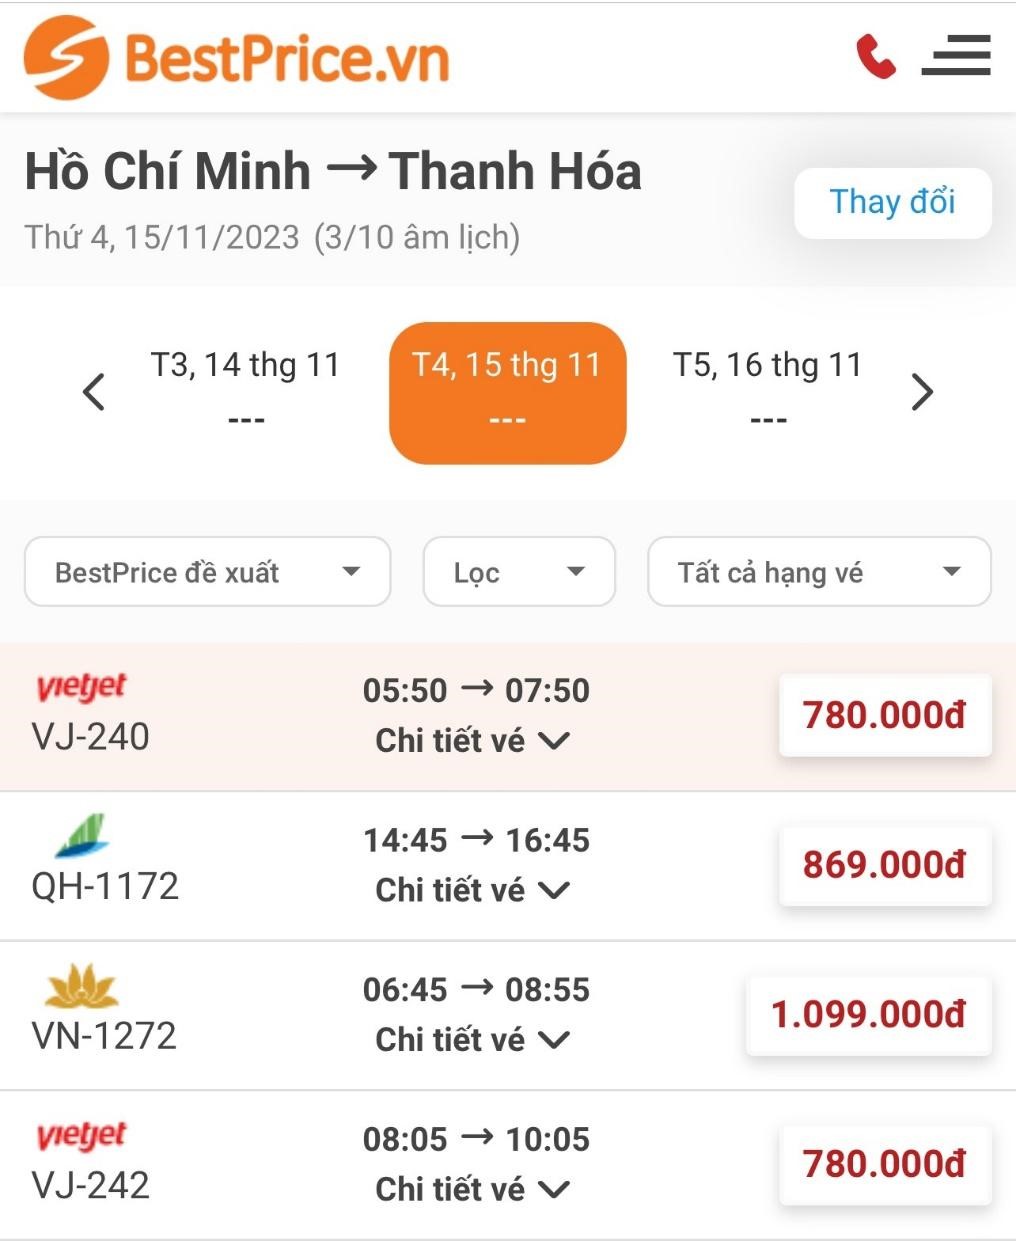 Kinh nghiệm đặt vé máy bay đi Thanh Hóa giá rẻ cùng BestPrice.vn